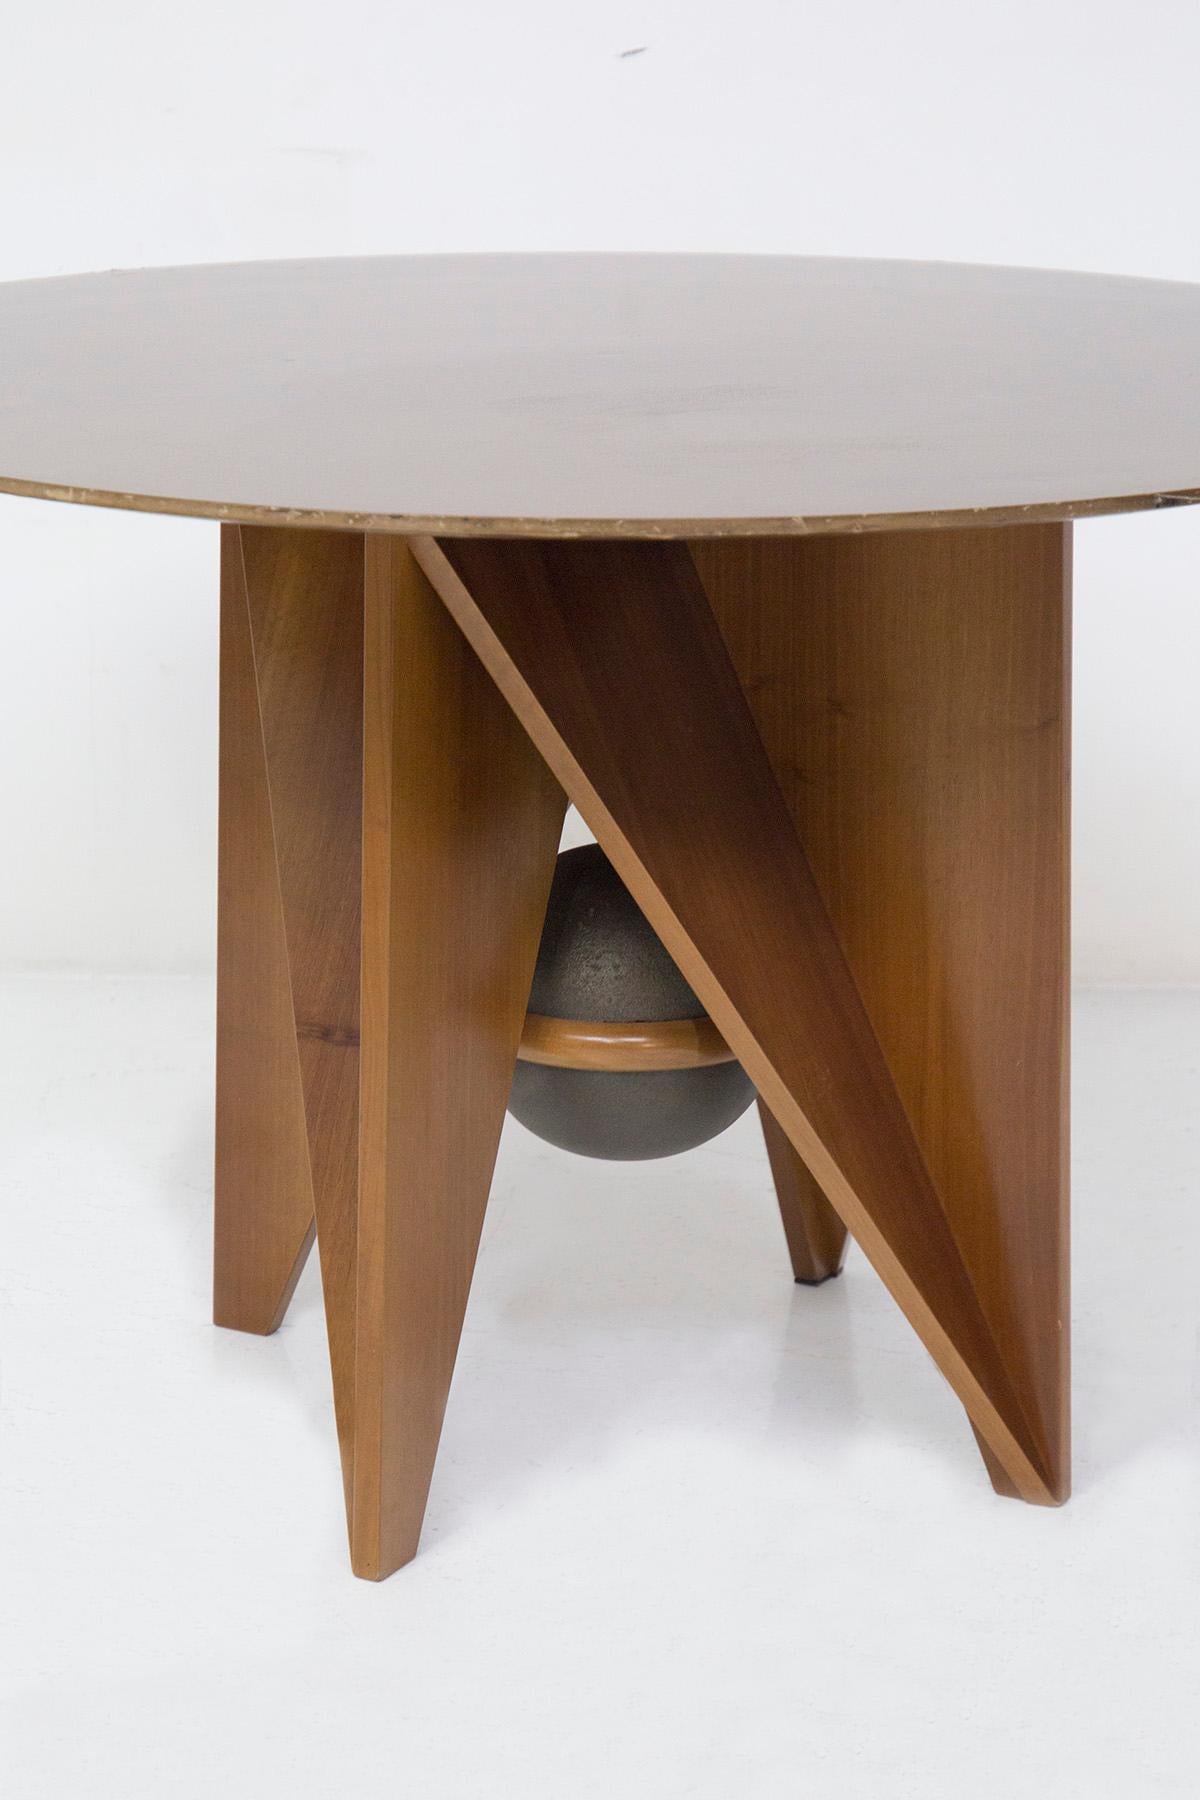 Wunderschöner Prototyp eines Tisches, der in den 1980er Jahren von Paolo und Adriano Suman für den italienischen Hersteller Giorgetti entworfen wurde.
Der Tisch ist ganz aus Holz gefertigt und hat sehr geometrische und markante Formen. Es gibt 4